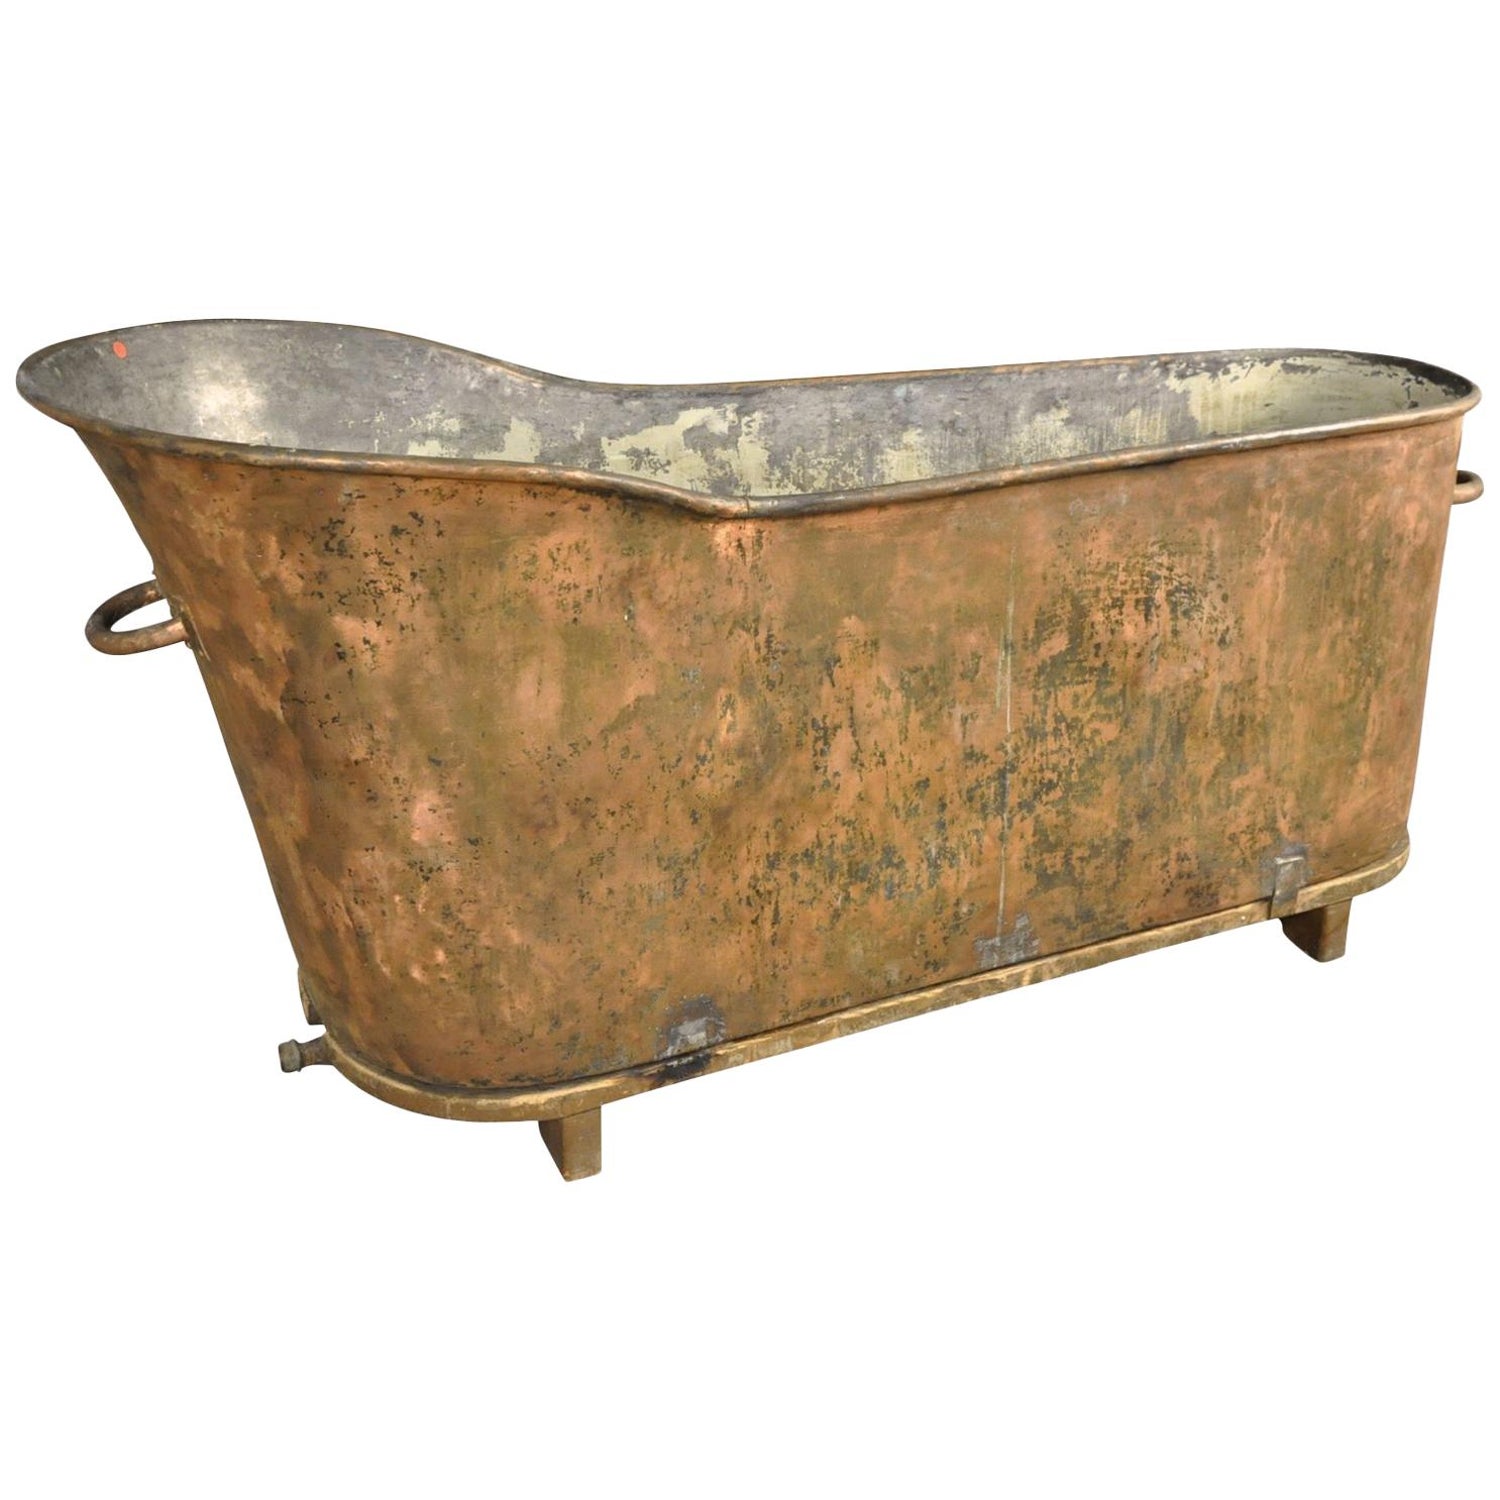 French 19th Century Copper Bathtub For, Antique Copper Bathtub